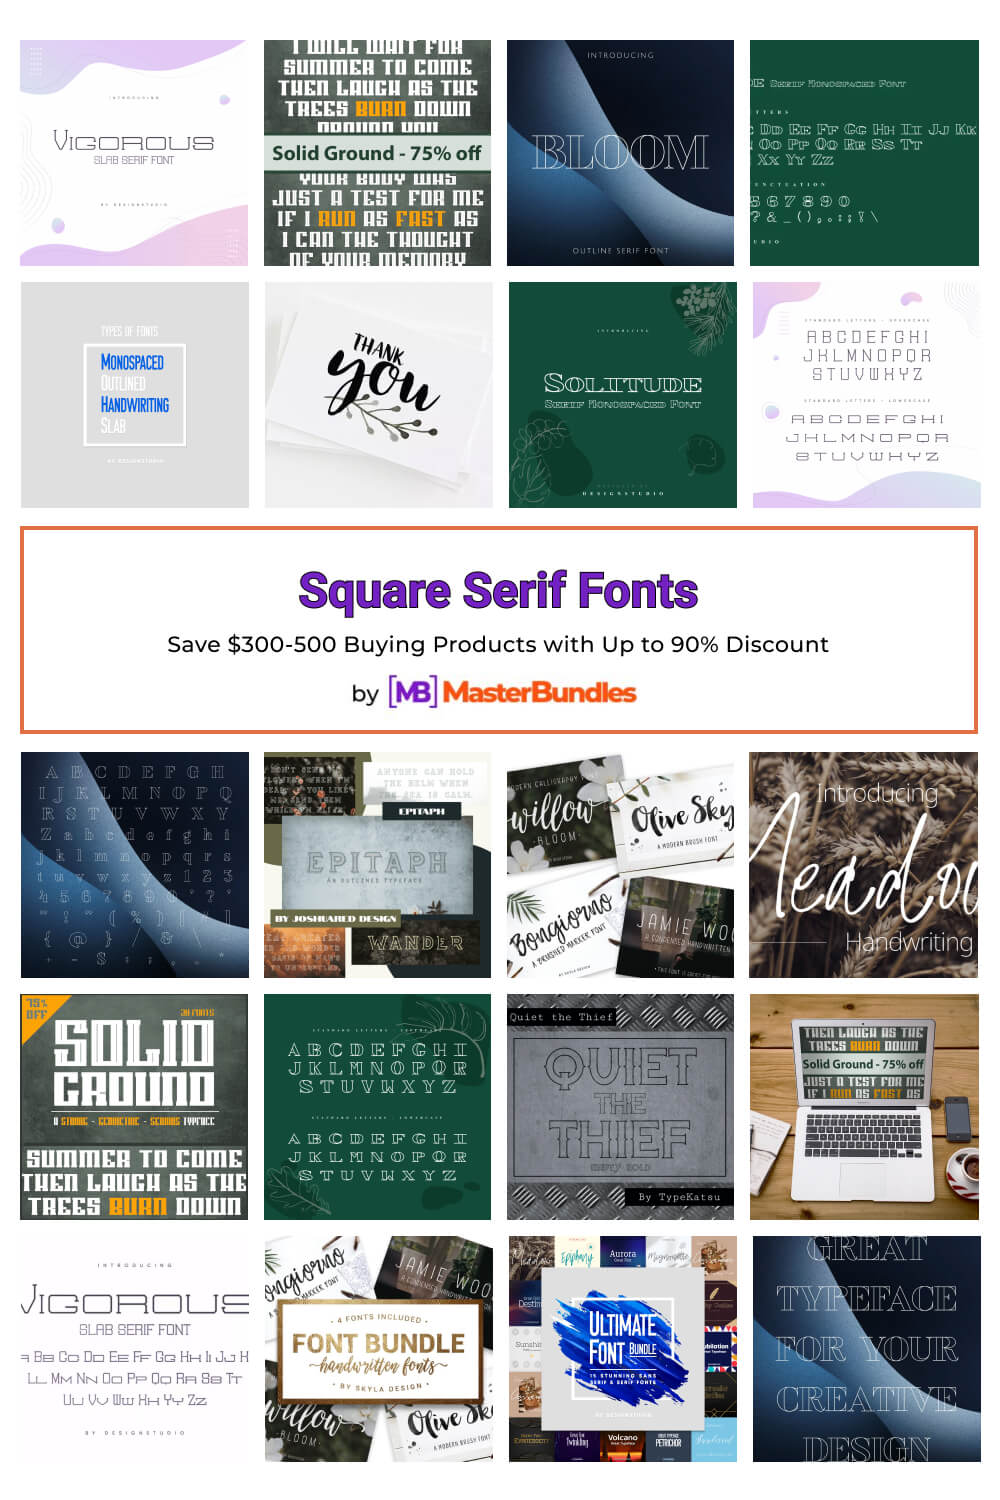 square serif fonts pinterest image.